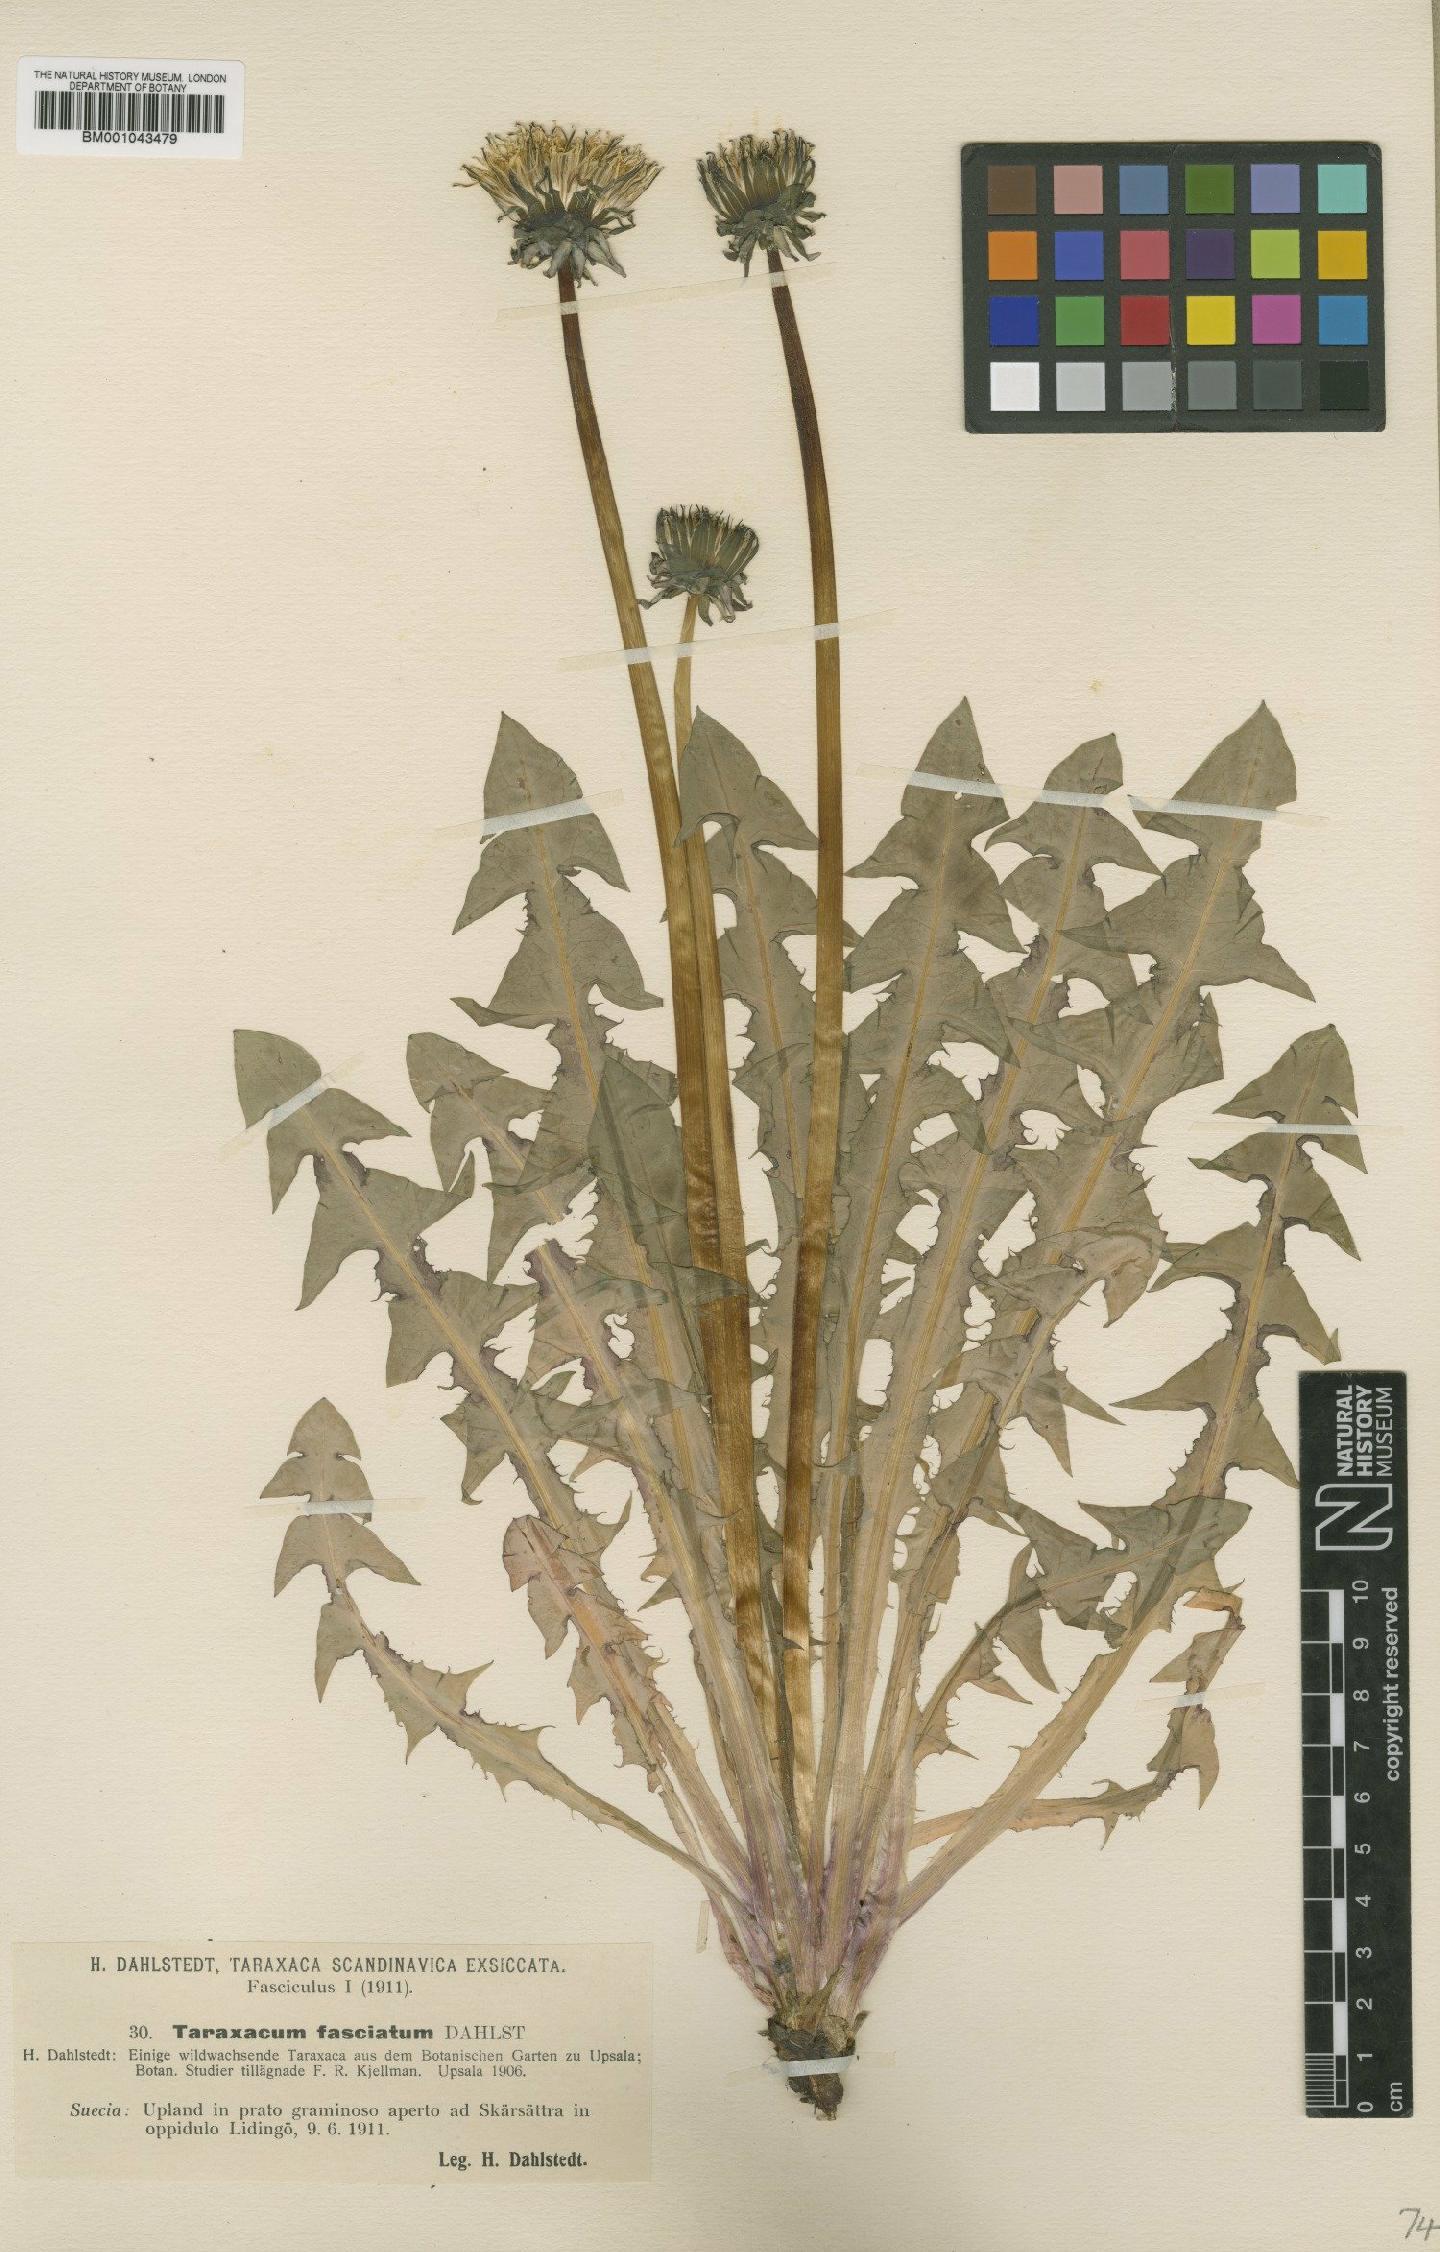 To NHMUK collection (Taraxacum fasciatum Dahlst; Type; NHMUK:ecatalogue:1998598)